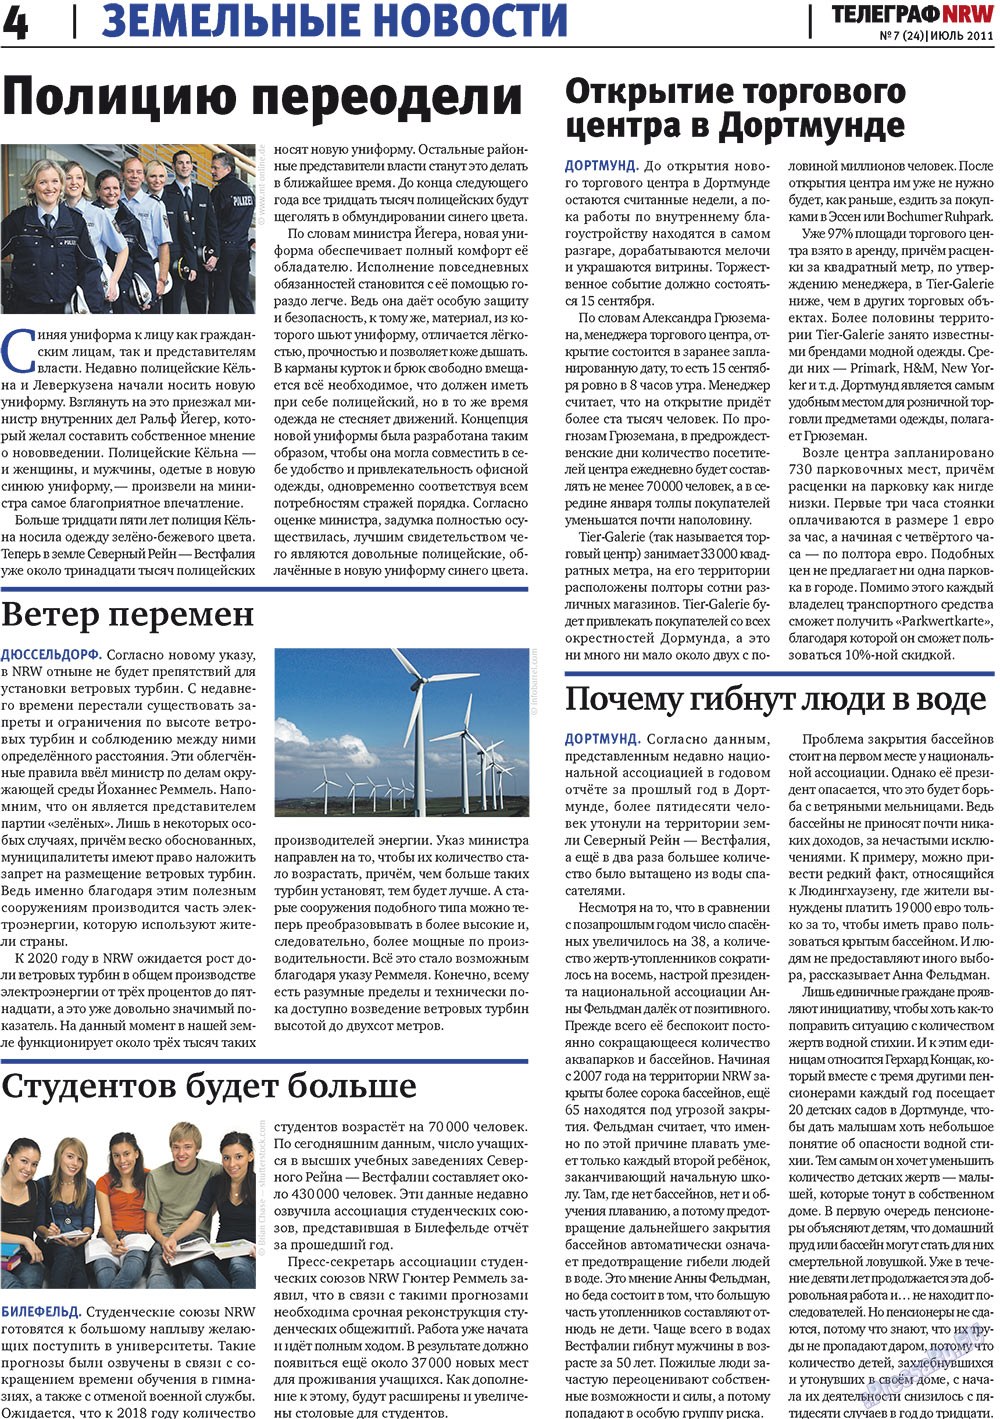 Телеграф NRW (газета). 2011 год, номер 7, стр. 4